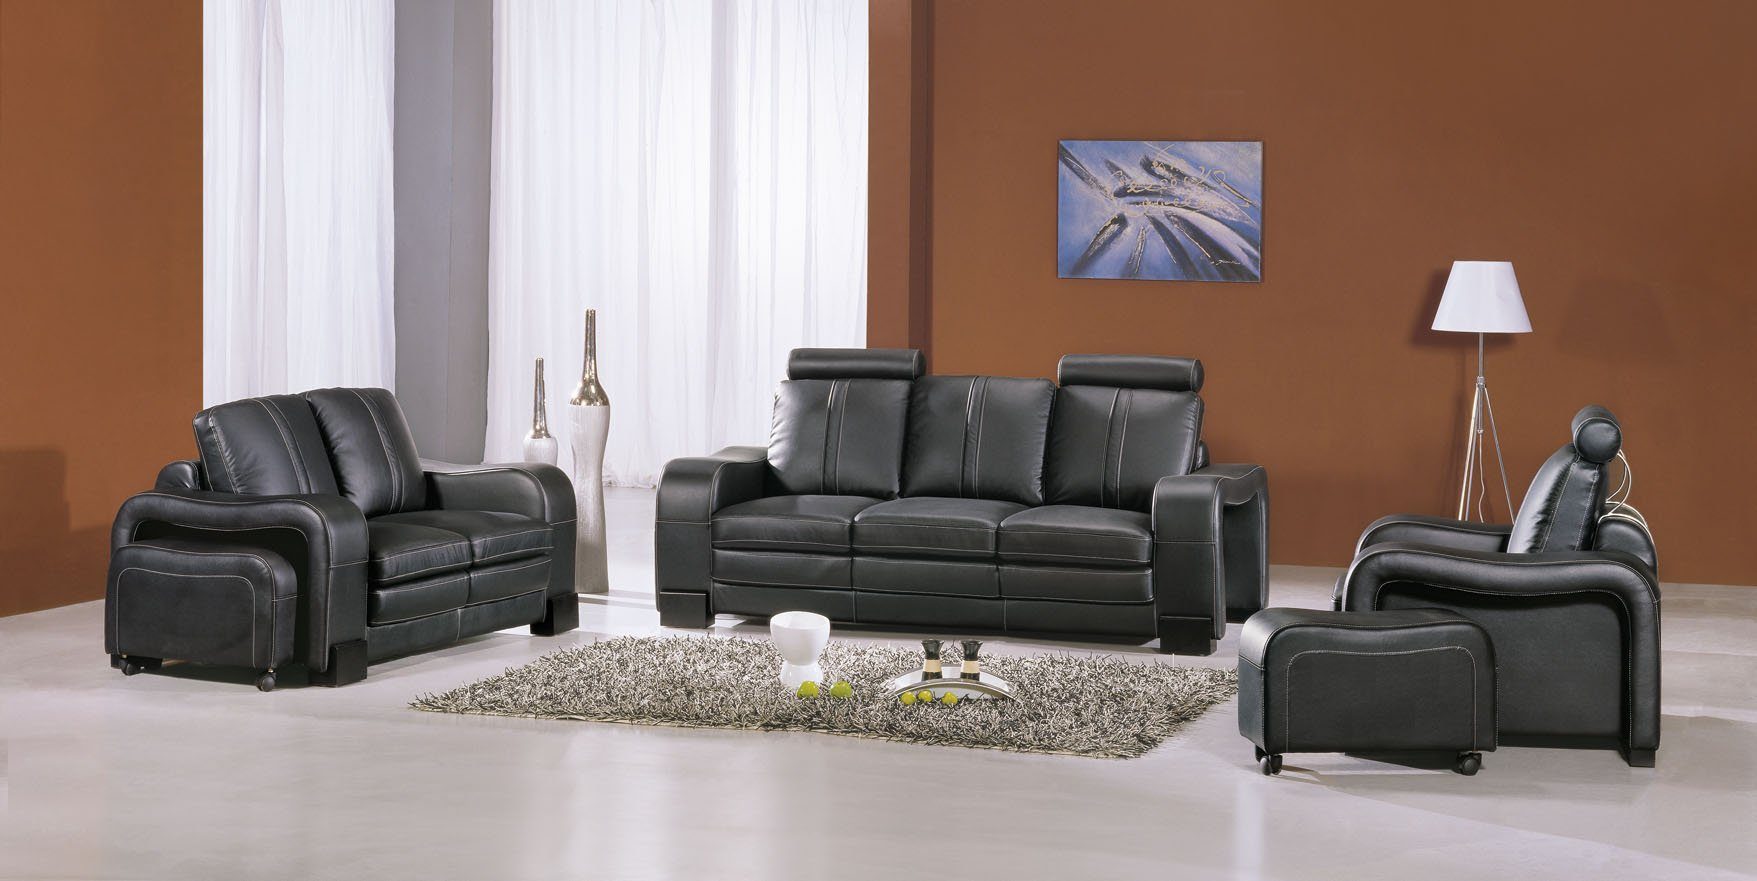 JVmoebel Sofa Sofagarnitur 3+2+1 in Europe 3339, Wohnzimmer Polster Set Couch Sitz Leder Made